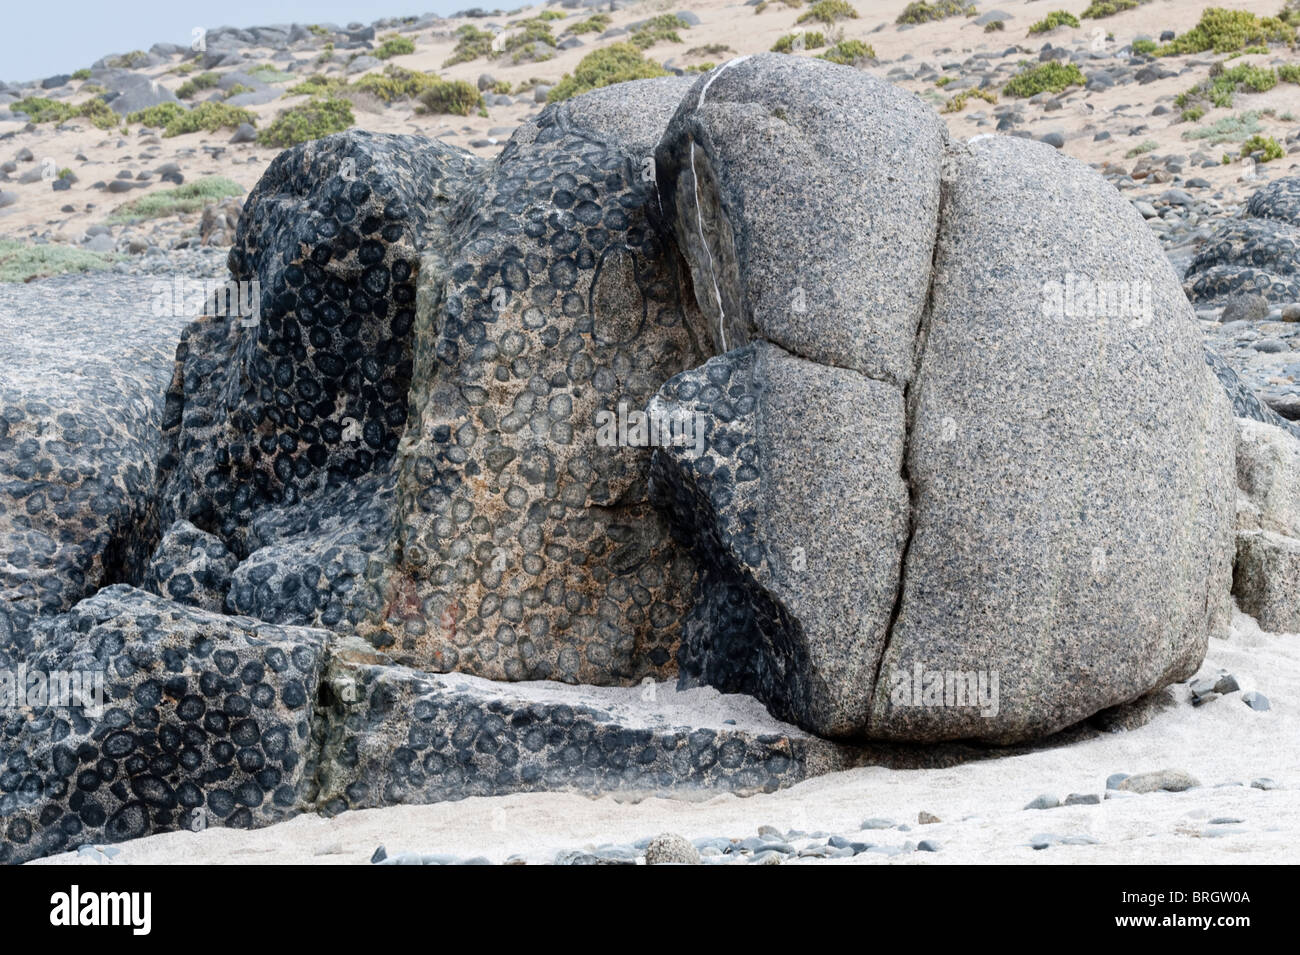 Granito Roccia Orbicular nella Costa del Pacifico Santuario de la Naturaleza Rodillo deserto di Atacama cile america del sud Foto Stock